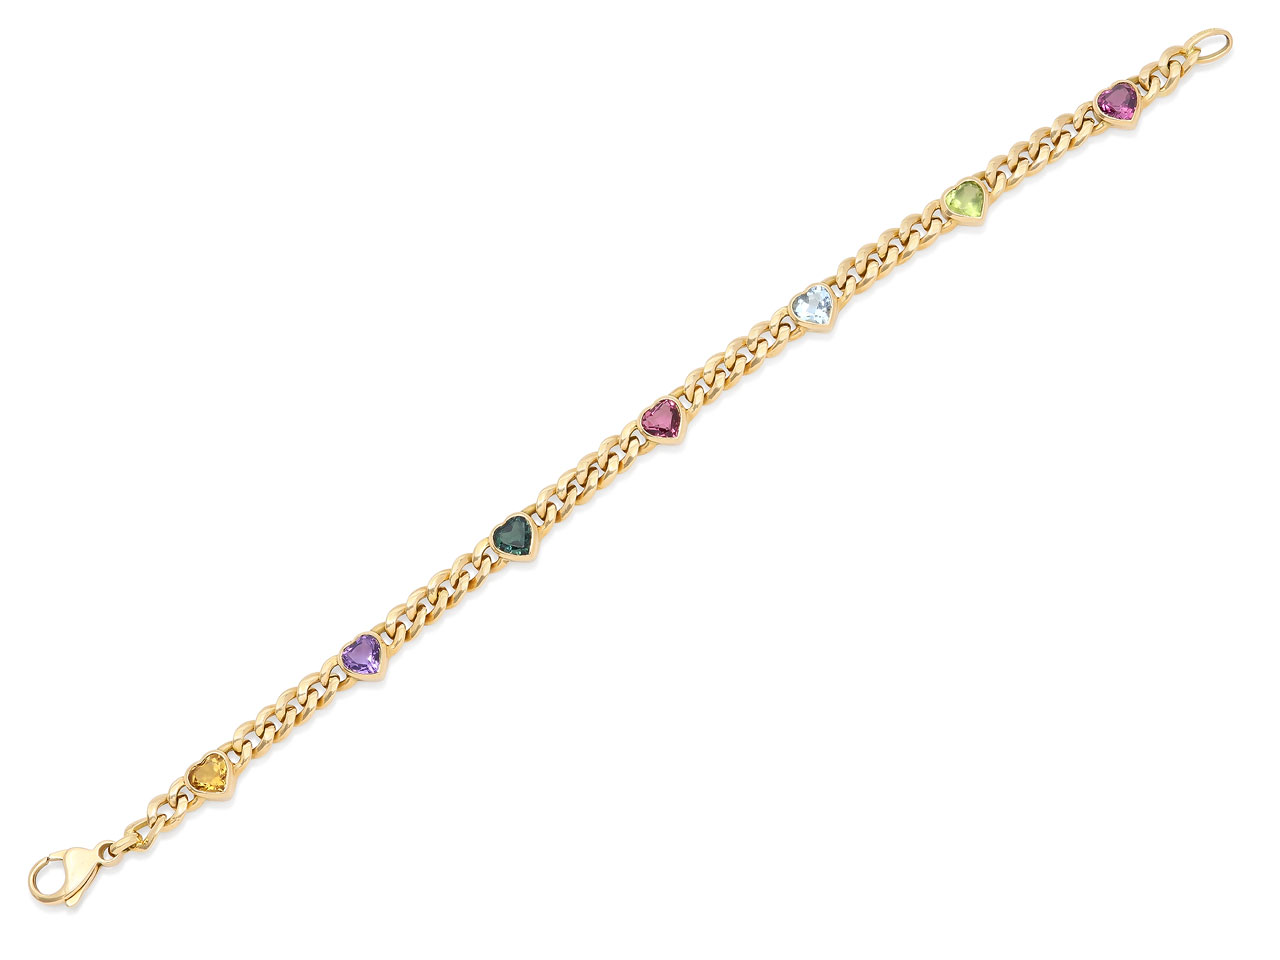 Tiffany & Co. Multi-Gemstone Heart Link Bracelet in 18K Gold